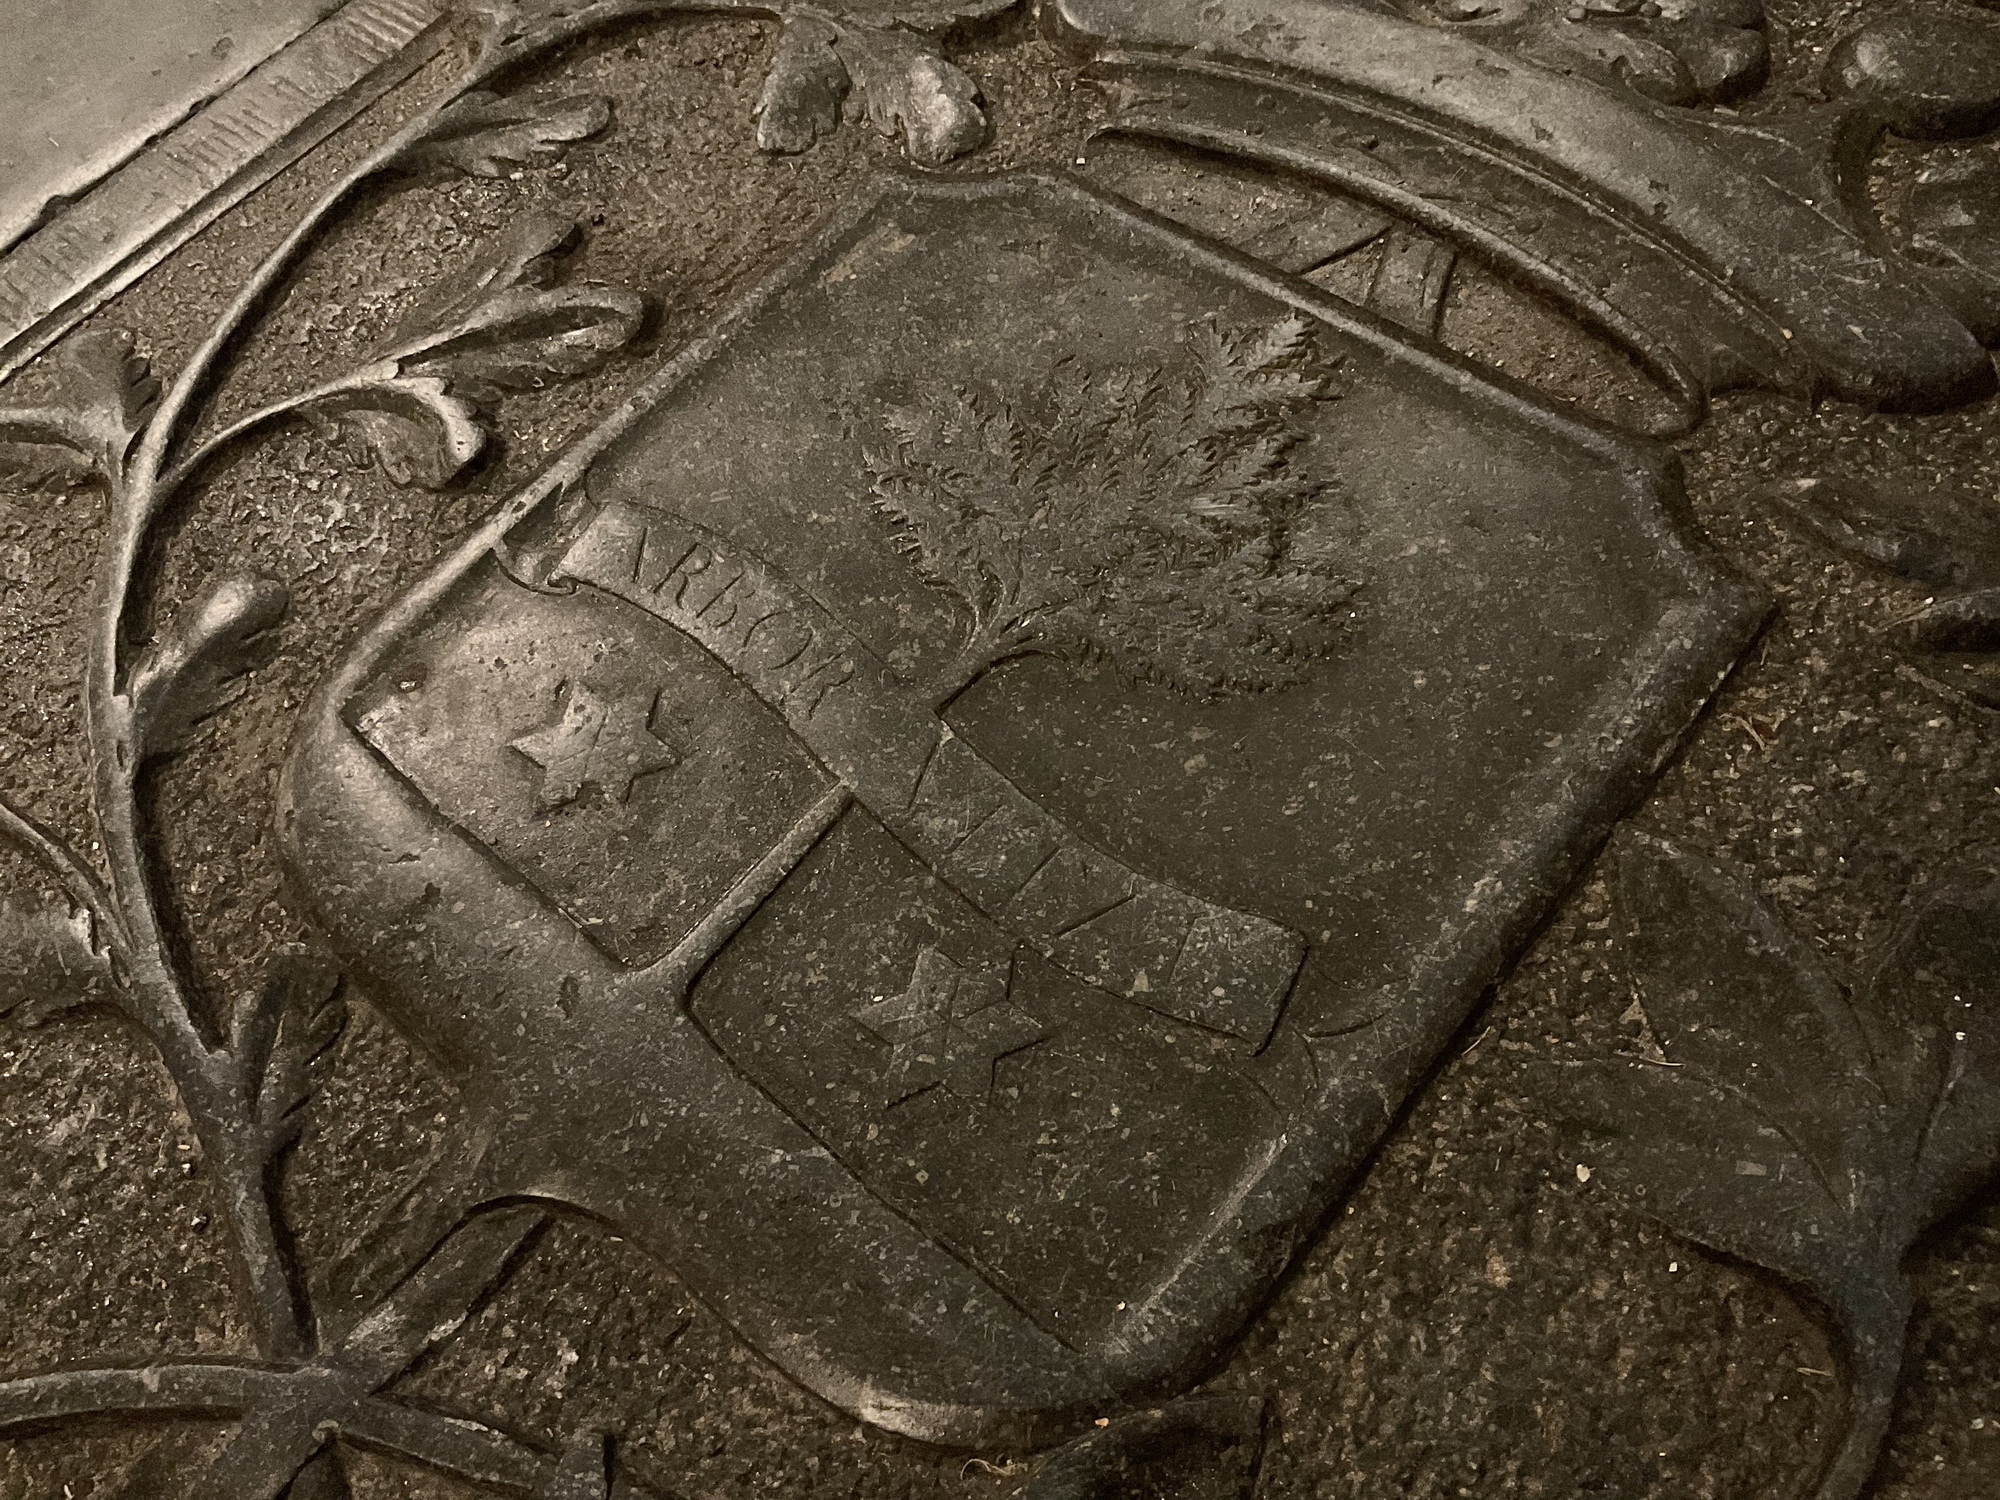 Zijn hardstenen zerk in de kerk is 201x80cm, is beschadigd en afgesleten. Het wapen is een schild met een kroon. Het schild bestaat uit twee sterren (Appius). Voor de boom een lint met de tekst ARRBOR VIVIT. Onderop de zerk bevindt zich een zandloperr met vleugels en een doodskop met gekruiste bottenDe stenen grafzerk van Jacob Appius ligt voor de preekstoel in de Koepelkerk van Sappemeer. Foto: ©Jur Kuipers